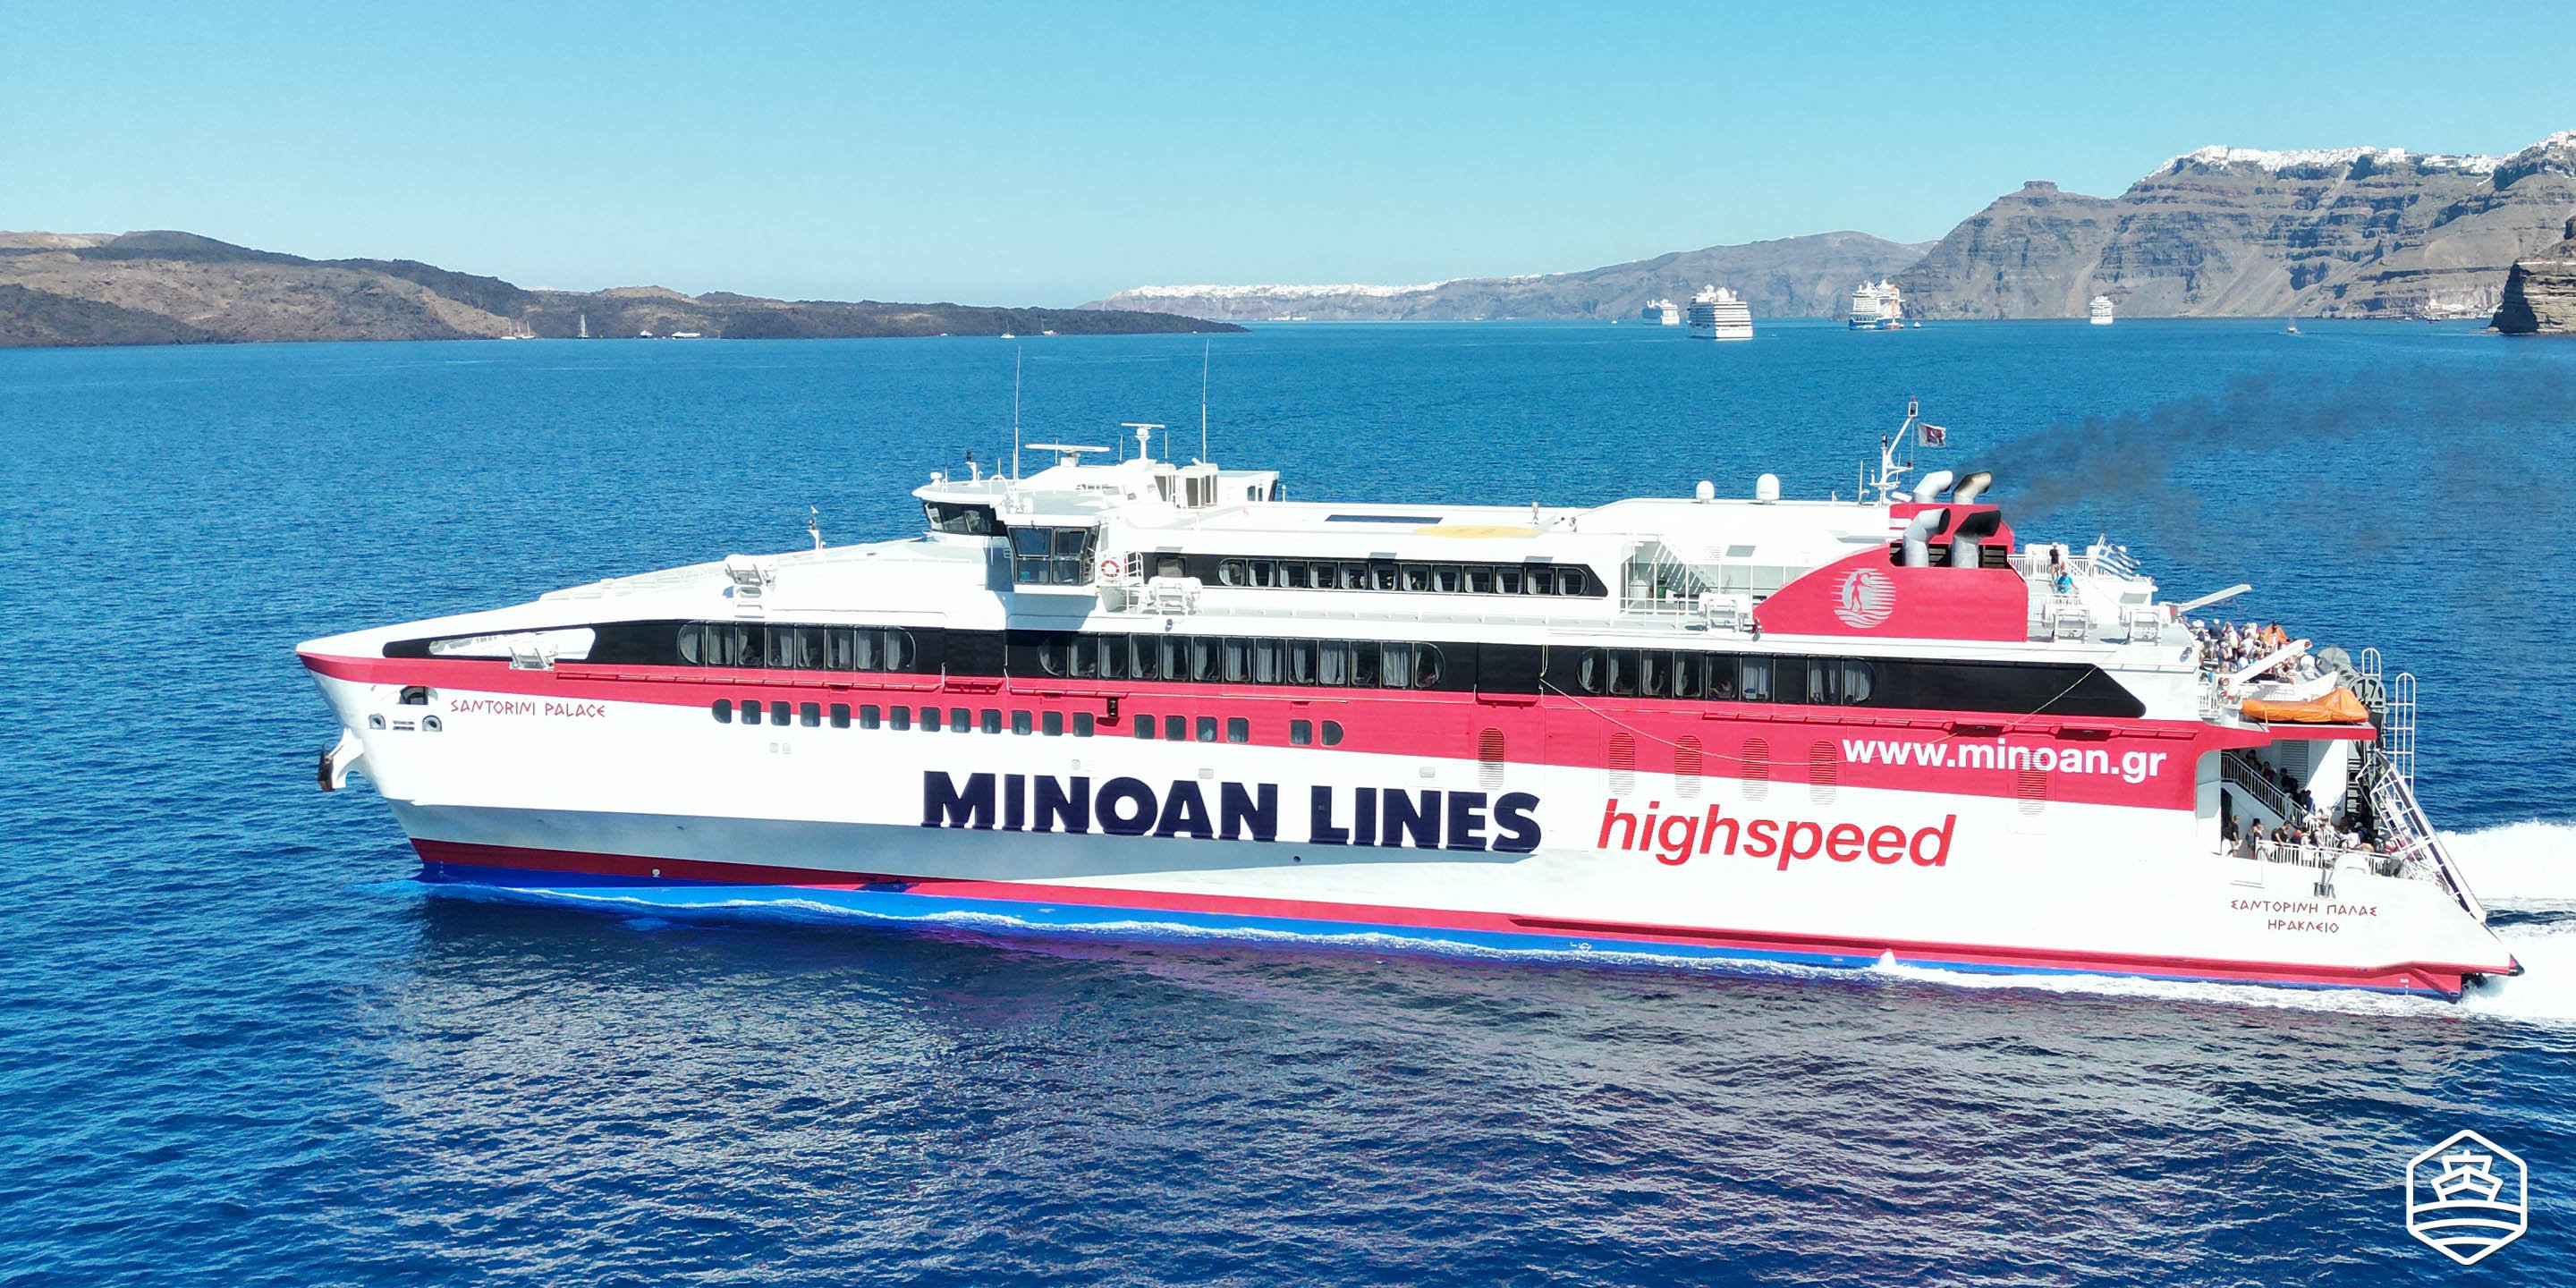 Die Hochgeschwindigkeitsfähre Santorini Palace von Minoan Lines verlässt den Hafen von Athinios auf Santorin in Richtung Heraklion auf Kreta